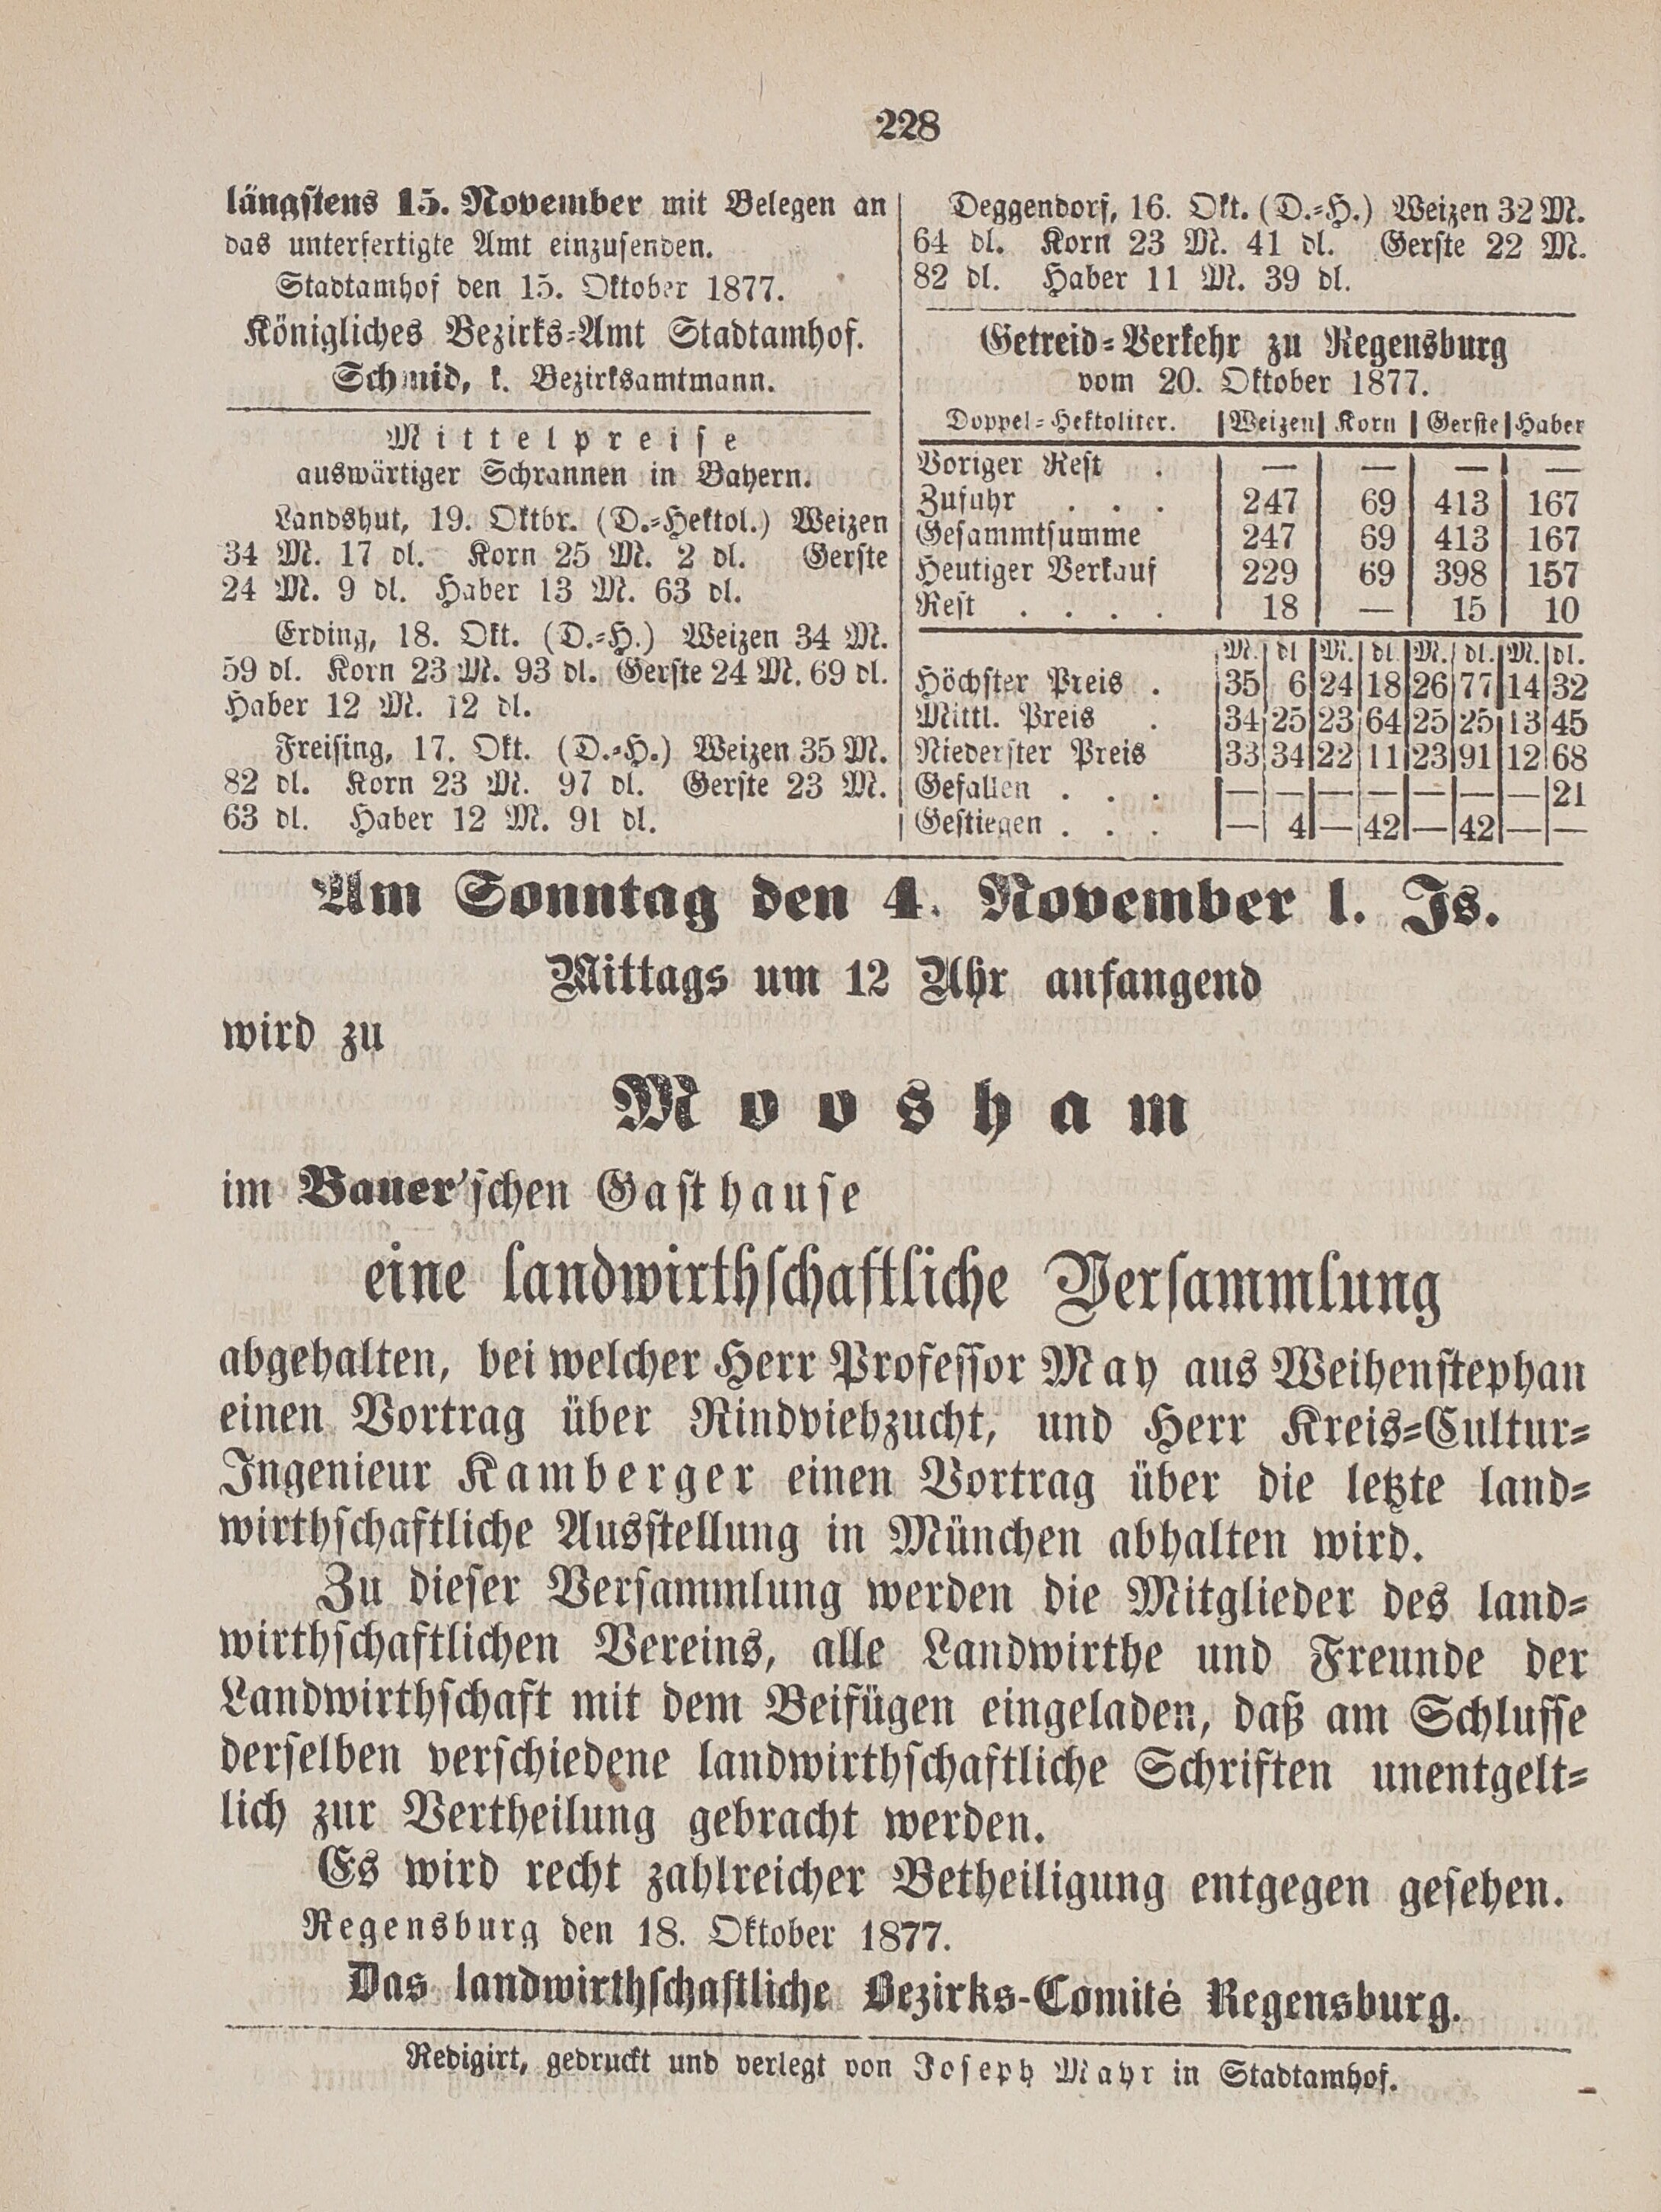 4. amtsblatt-stadtamhof-regensburg-1877-10-21-n42_2290